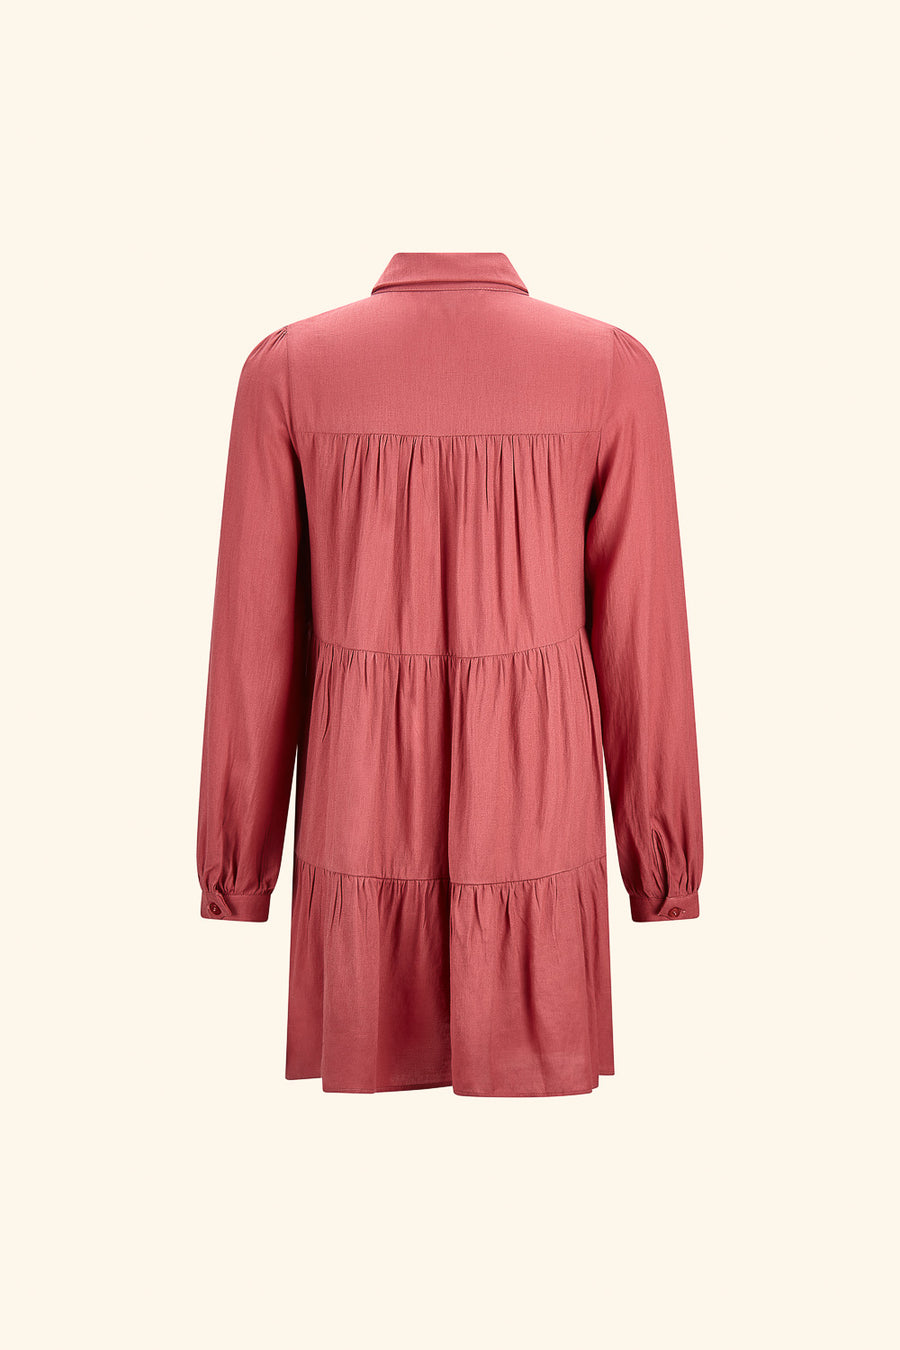 Mauve Button Up Sleeve Dress - Trixxi Wholesale